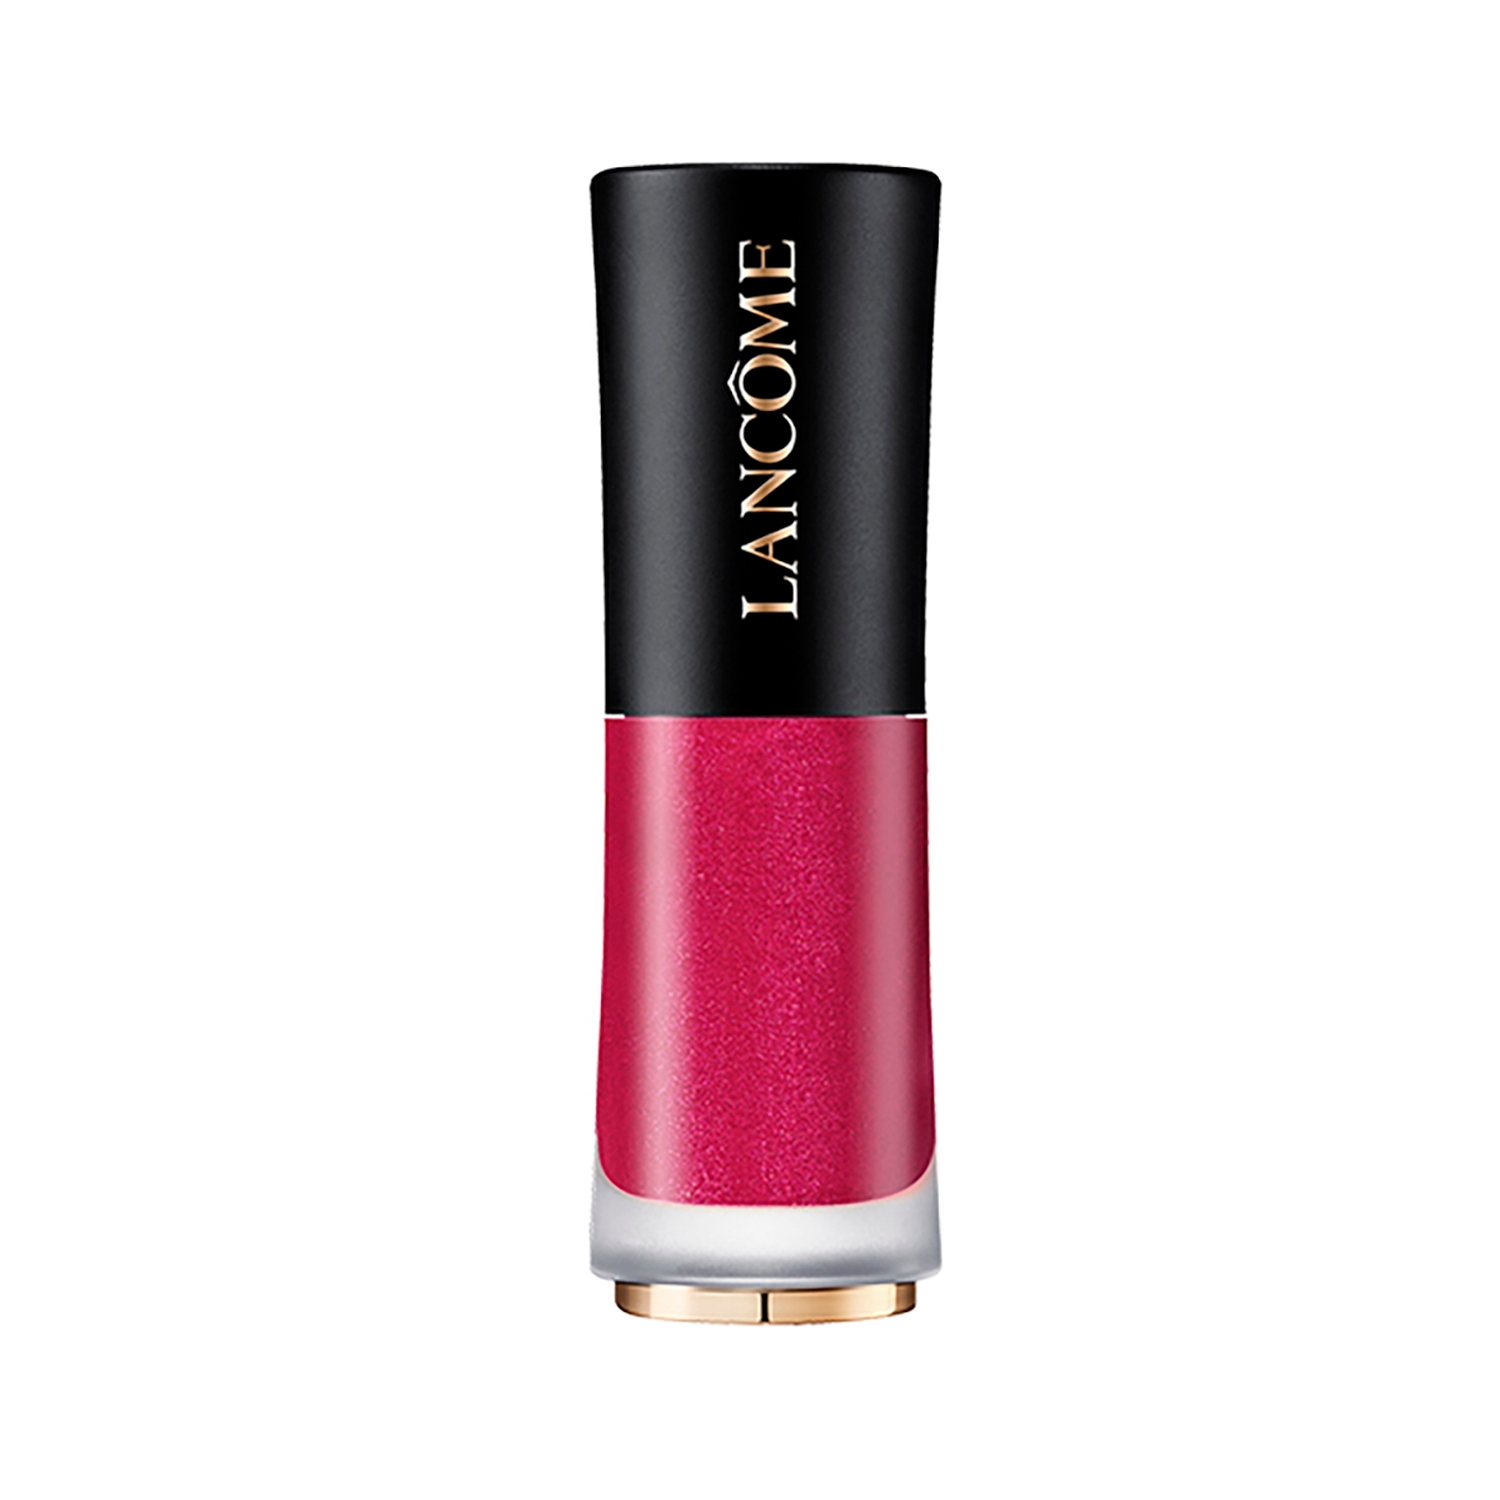 Lancome | Lancome L'Absolu Rouge Drama Ink Semi-Matte Liquid Lipstick - 502 Fiery Pink (6ml)